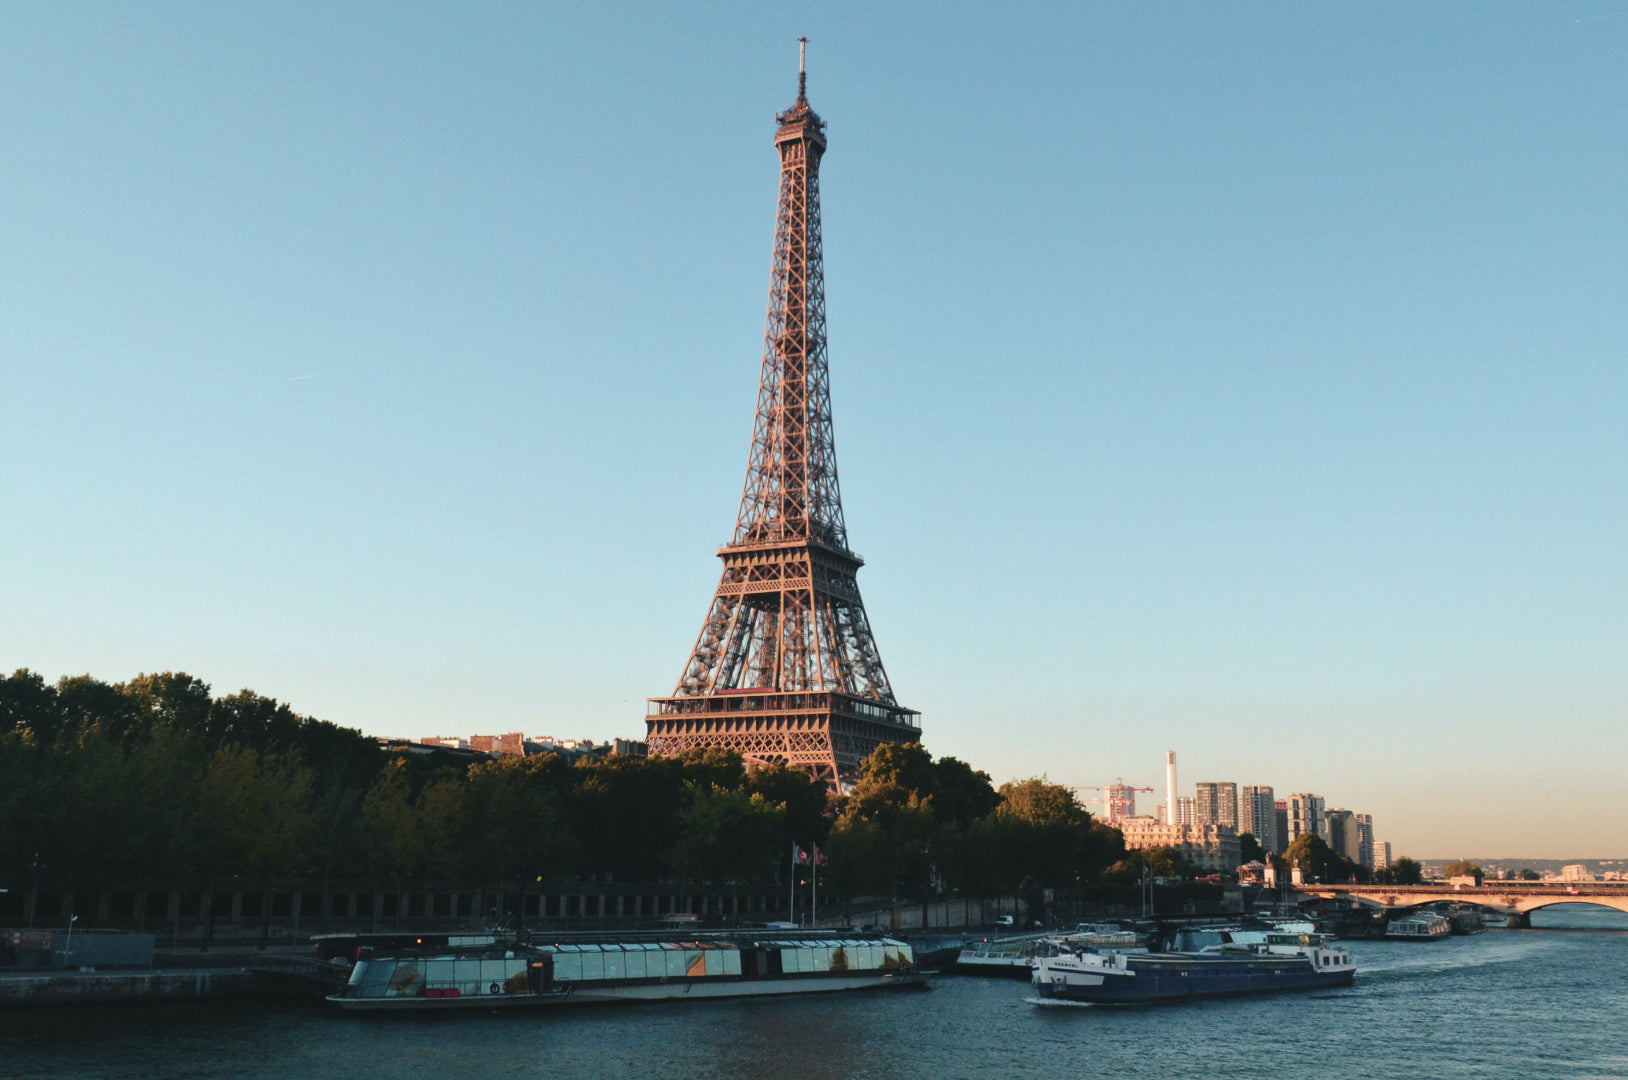 Une image de la tour Eiffel vue à travers un canal